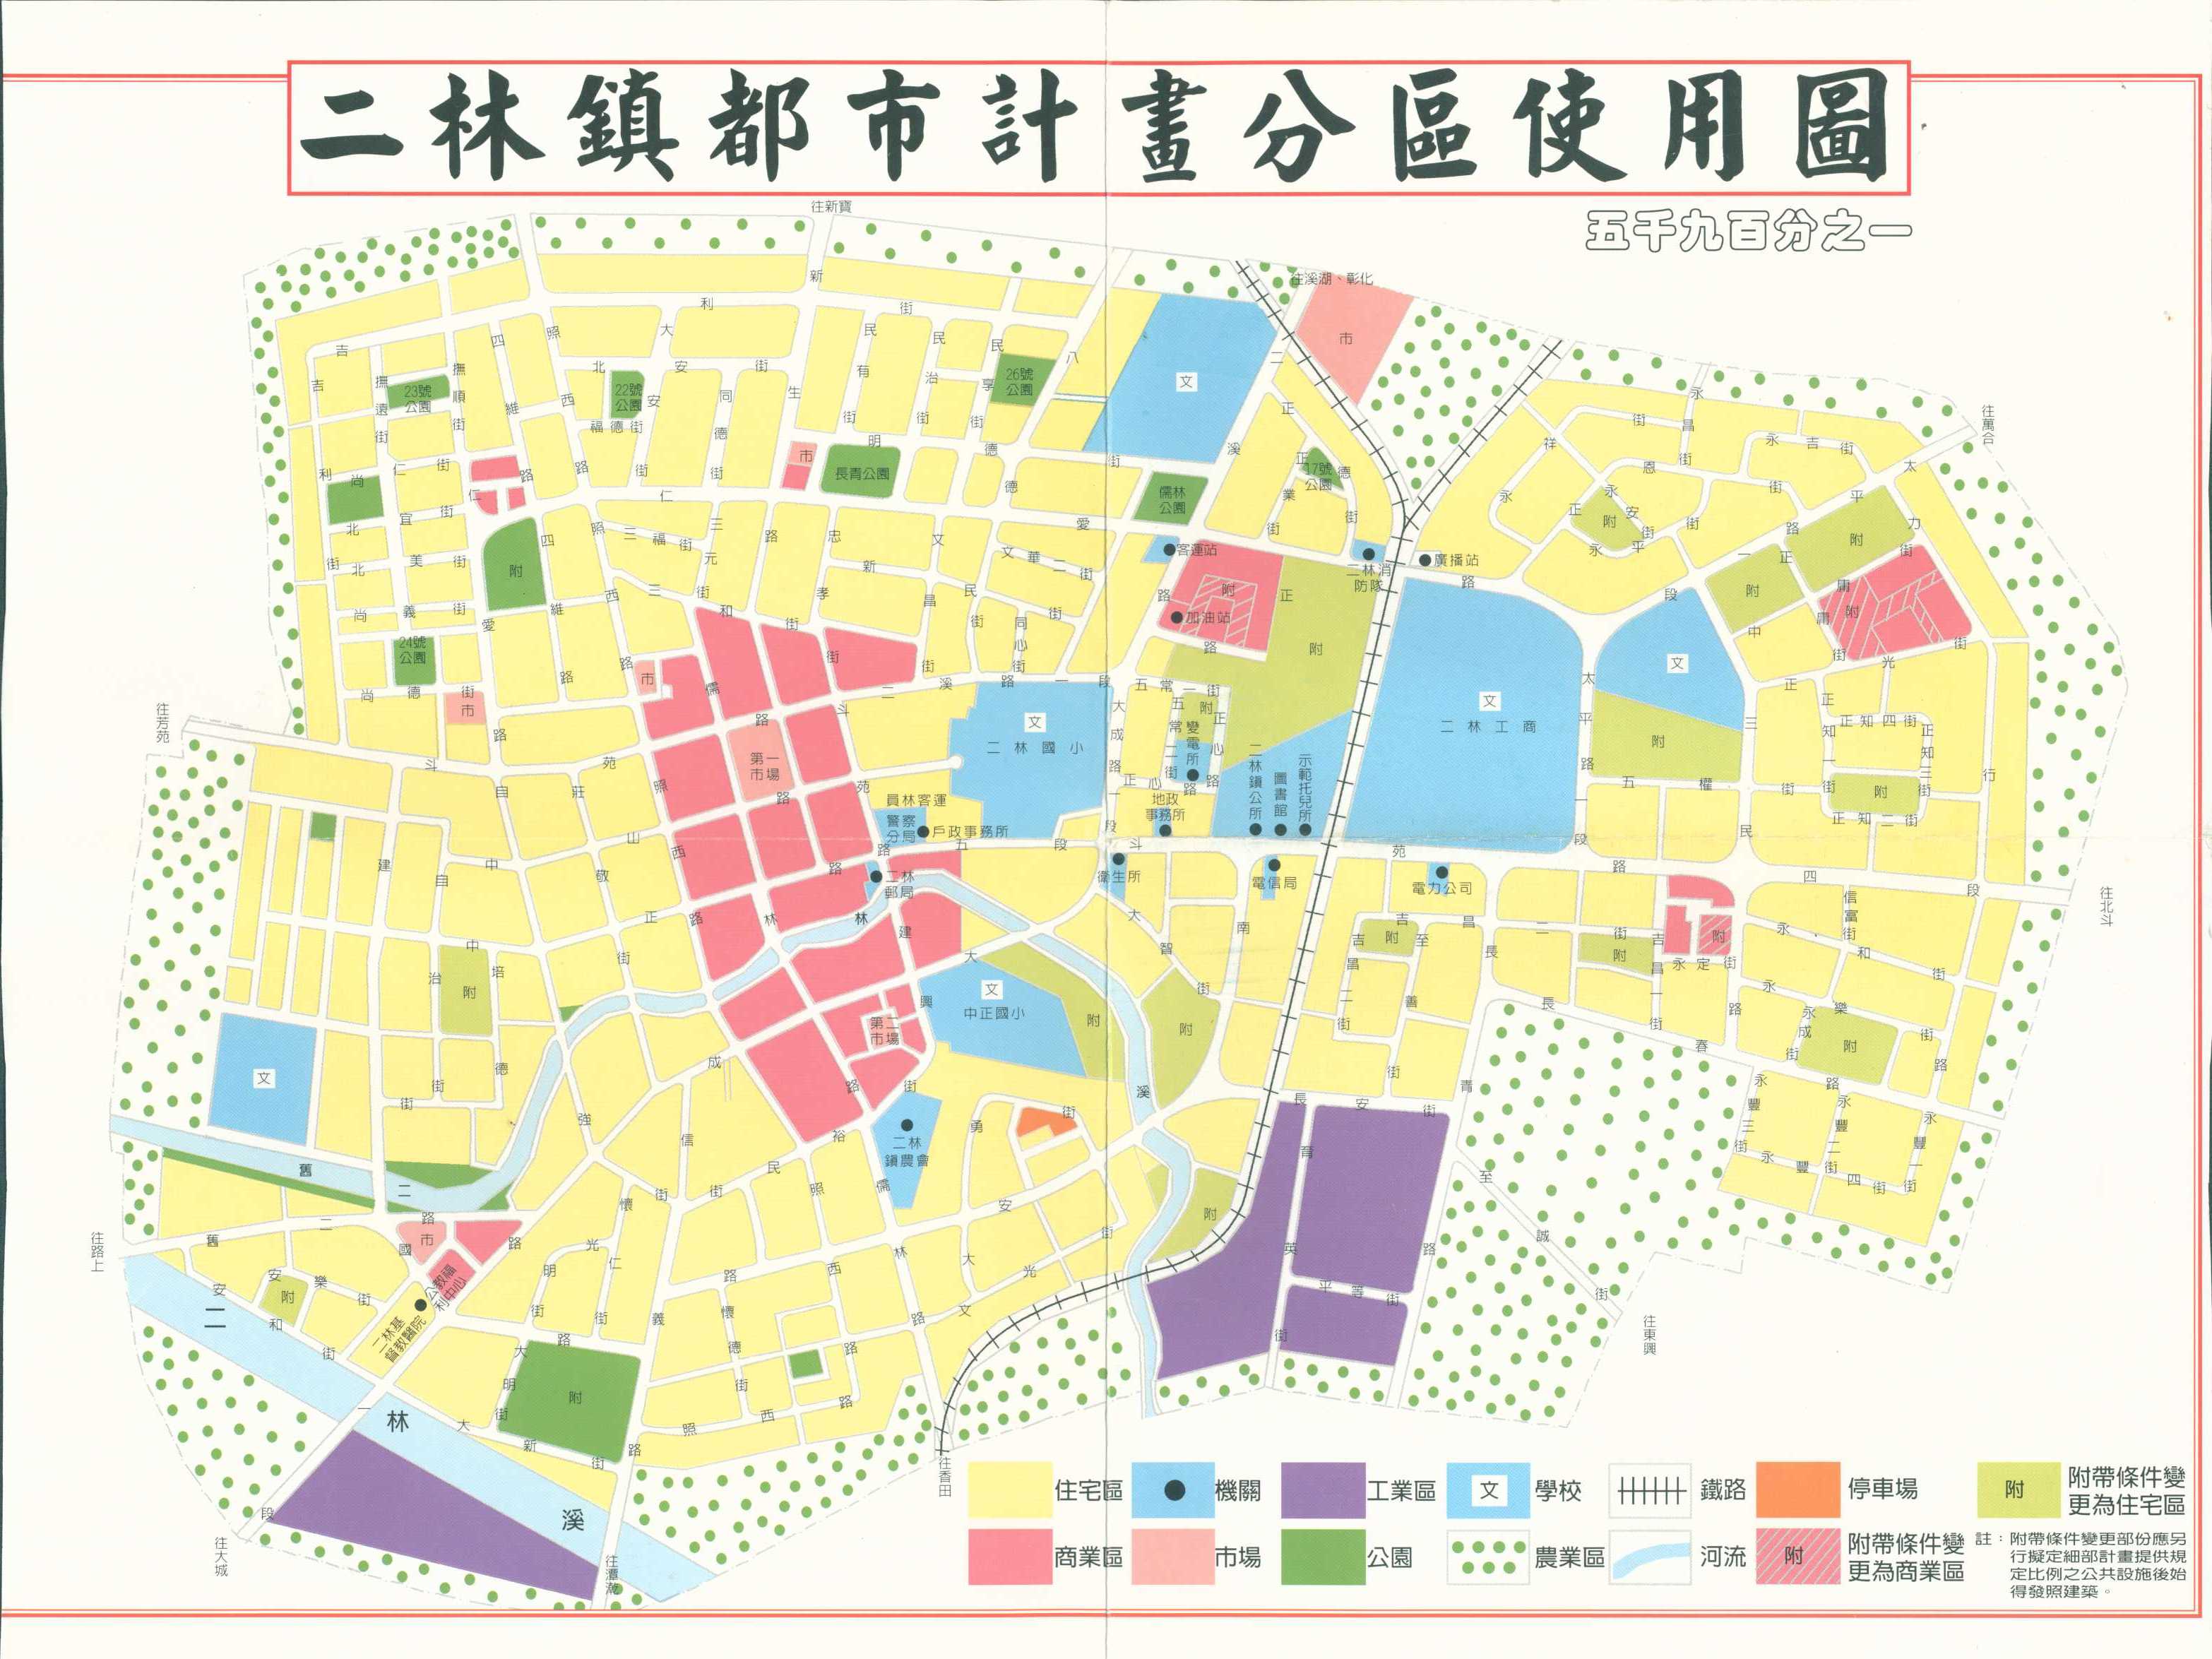 二林鎮都市計畫分區使用圖二林鎮都市計畫分區使用圖